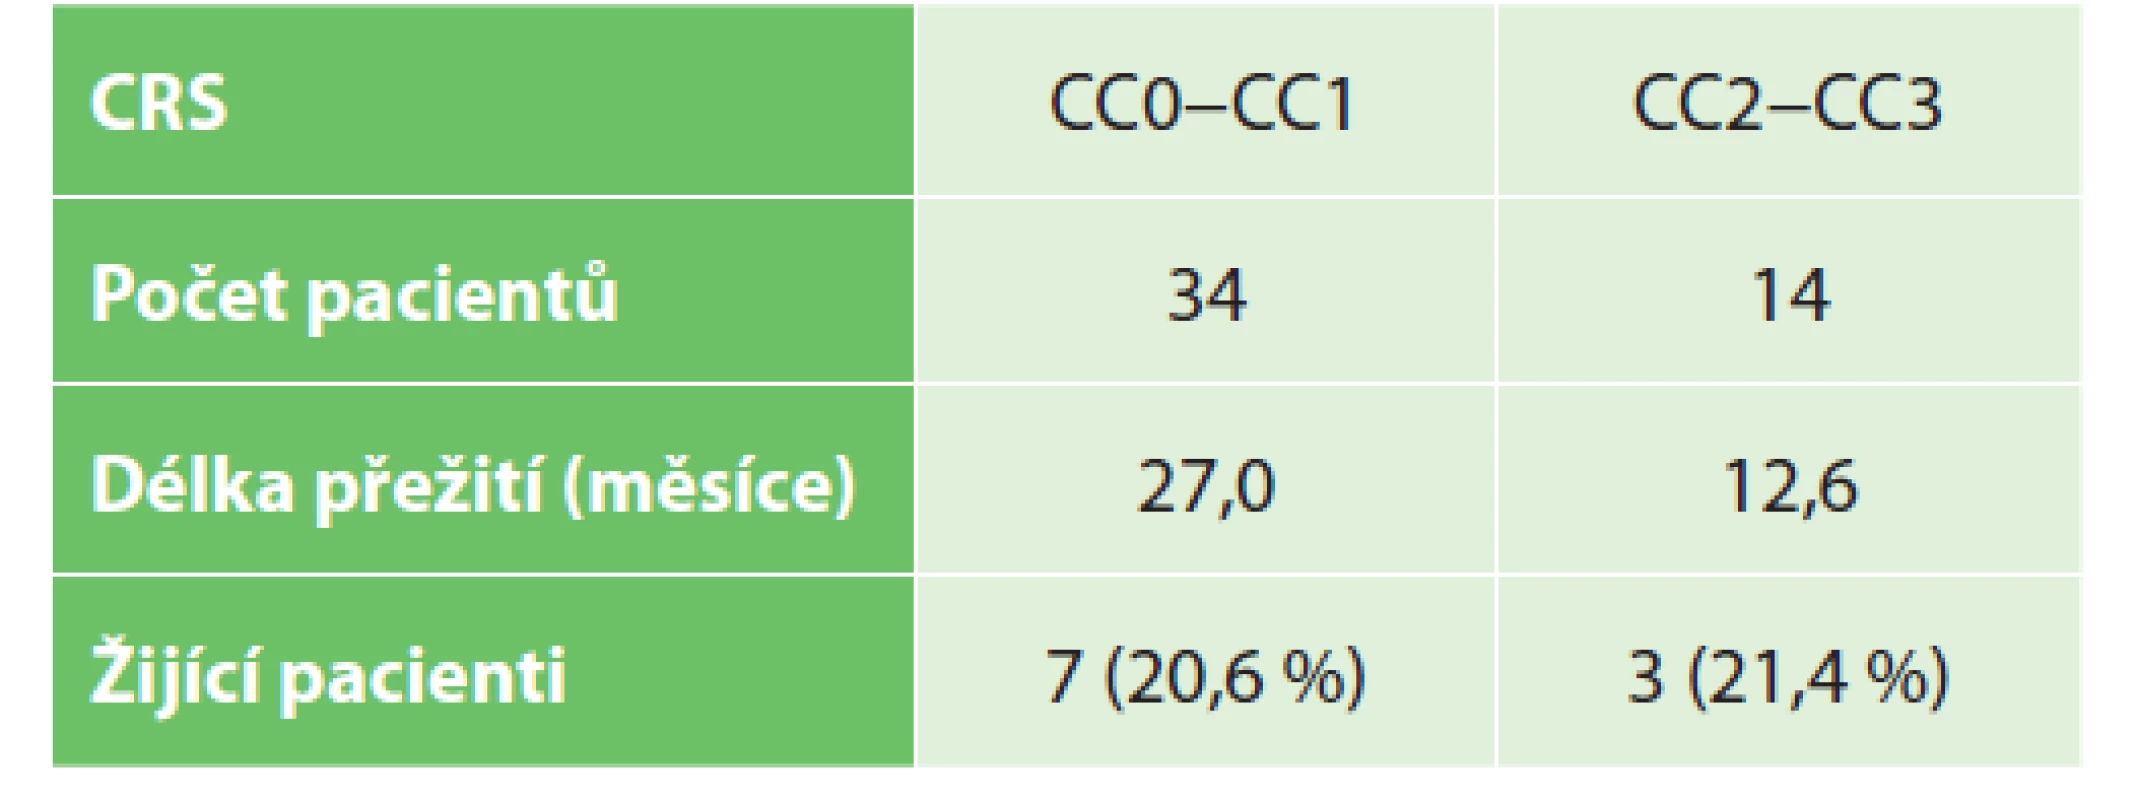 Přežití pacientů dle typu provedené CRS (CC skóre)<br>
Tab. 2: Patients survival according to CRS surgery (CC score)